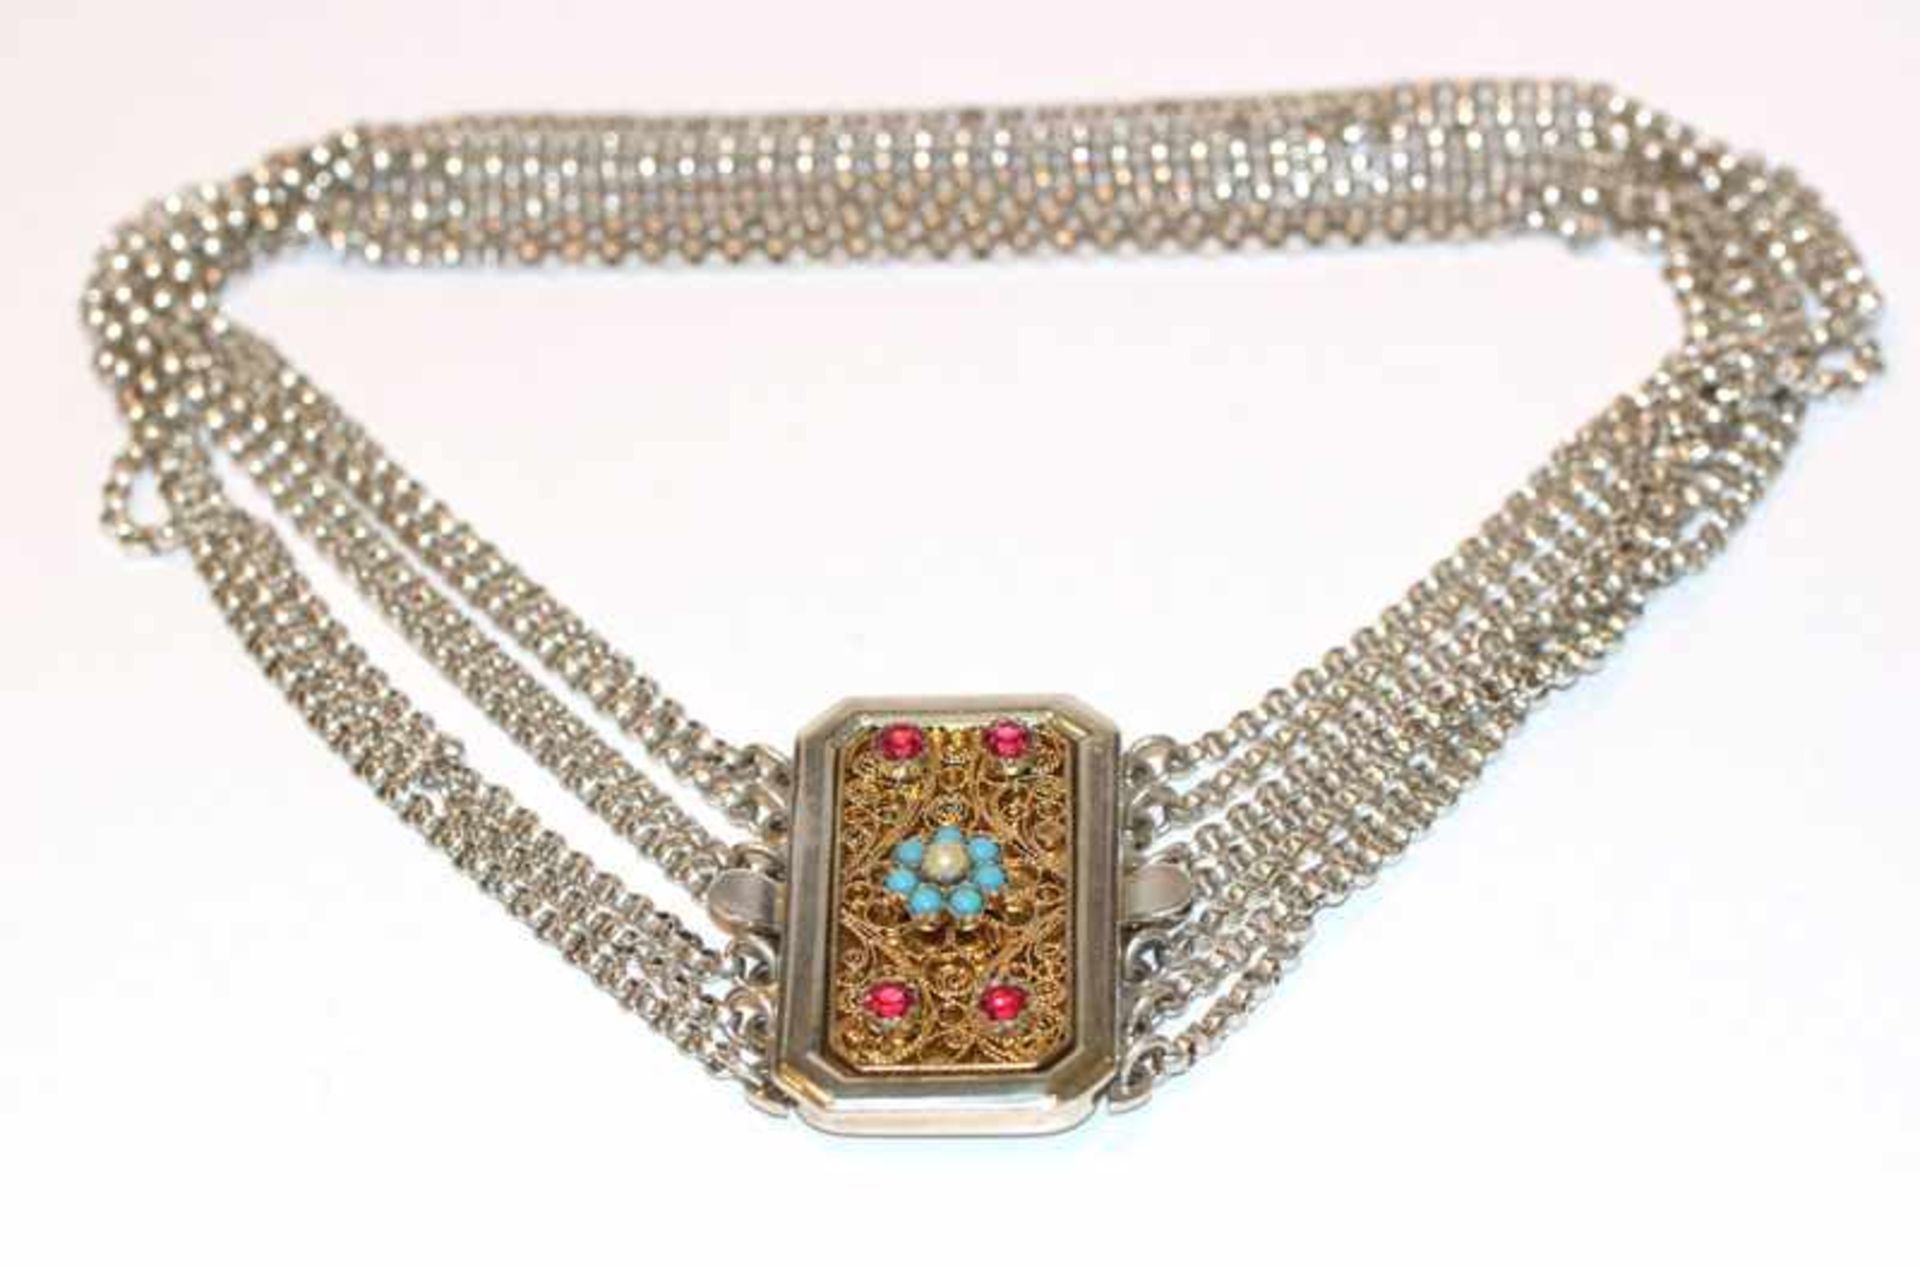 Silber Kropfkette, 7-reihig, filigrane Schließe mit Glassteinen verziert, L 35 cm, neuwertig